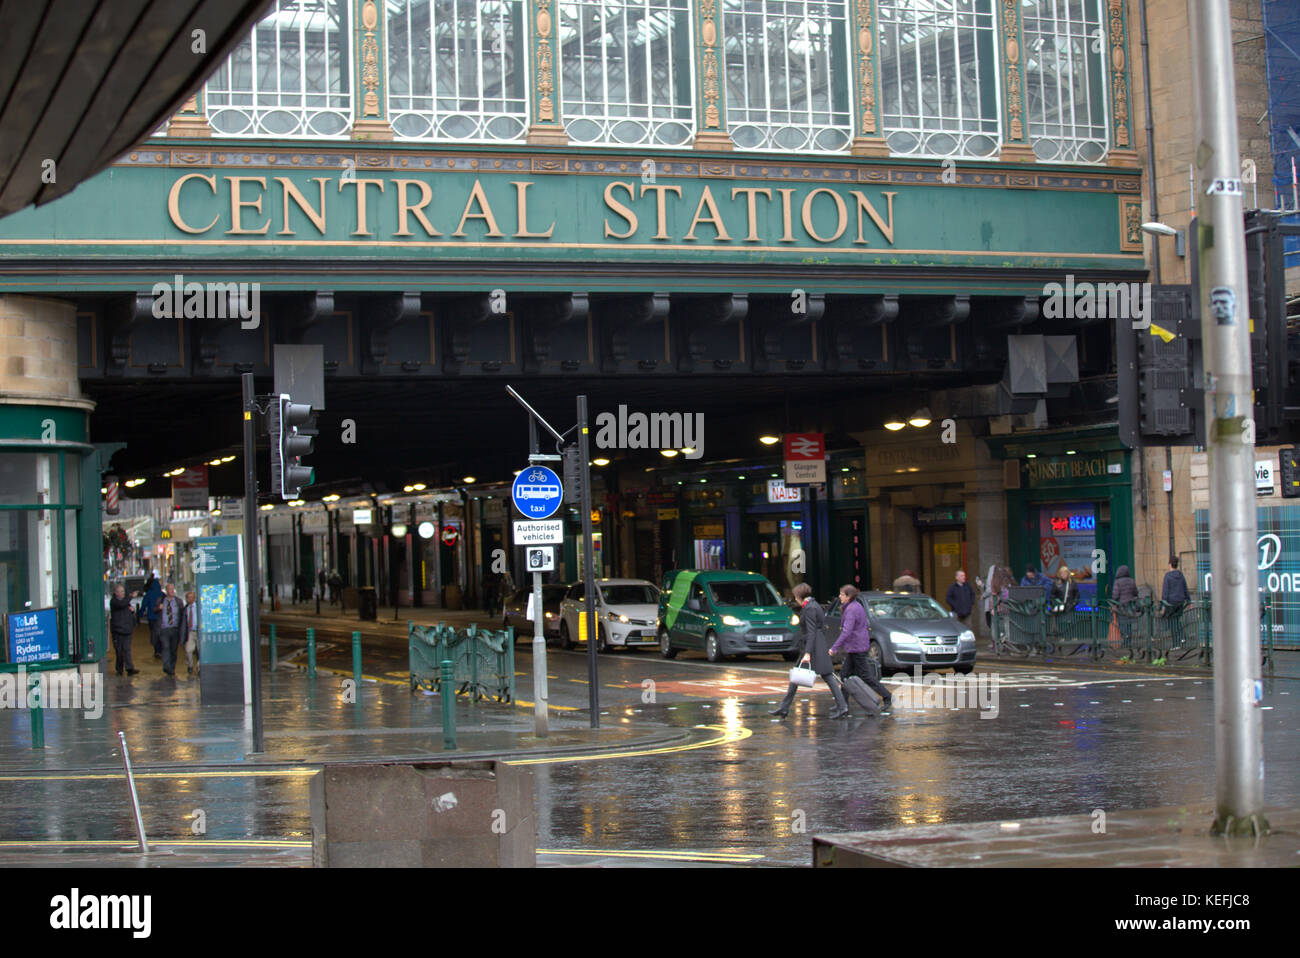 Montrant la gare centrale heilemans : parapluie un hotspot de la pollution des fumées de trafic et de Glasgow s'enregistrer pauvres de la santé Banque D'Images